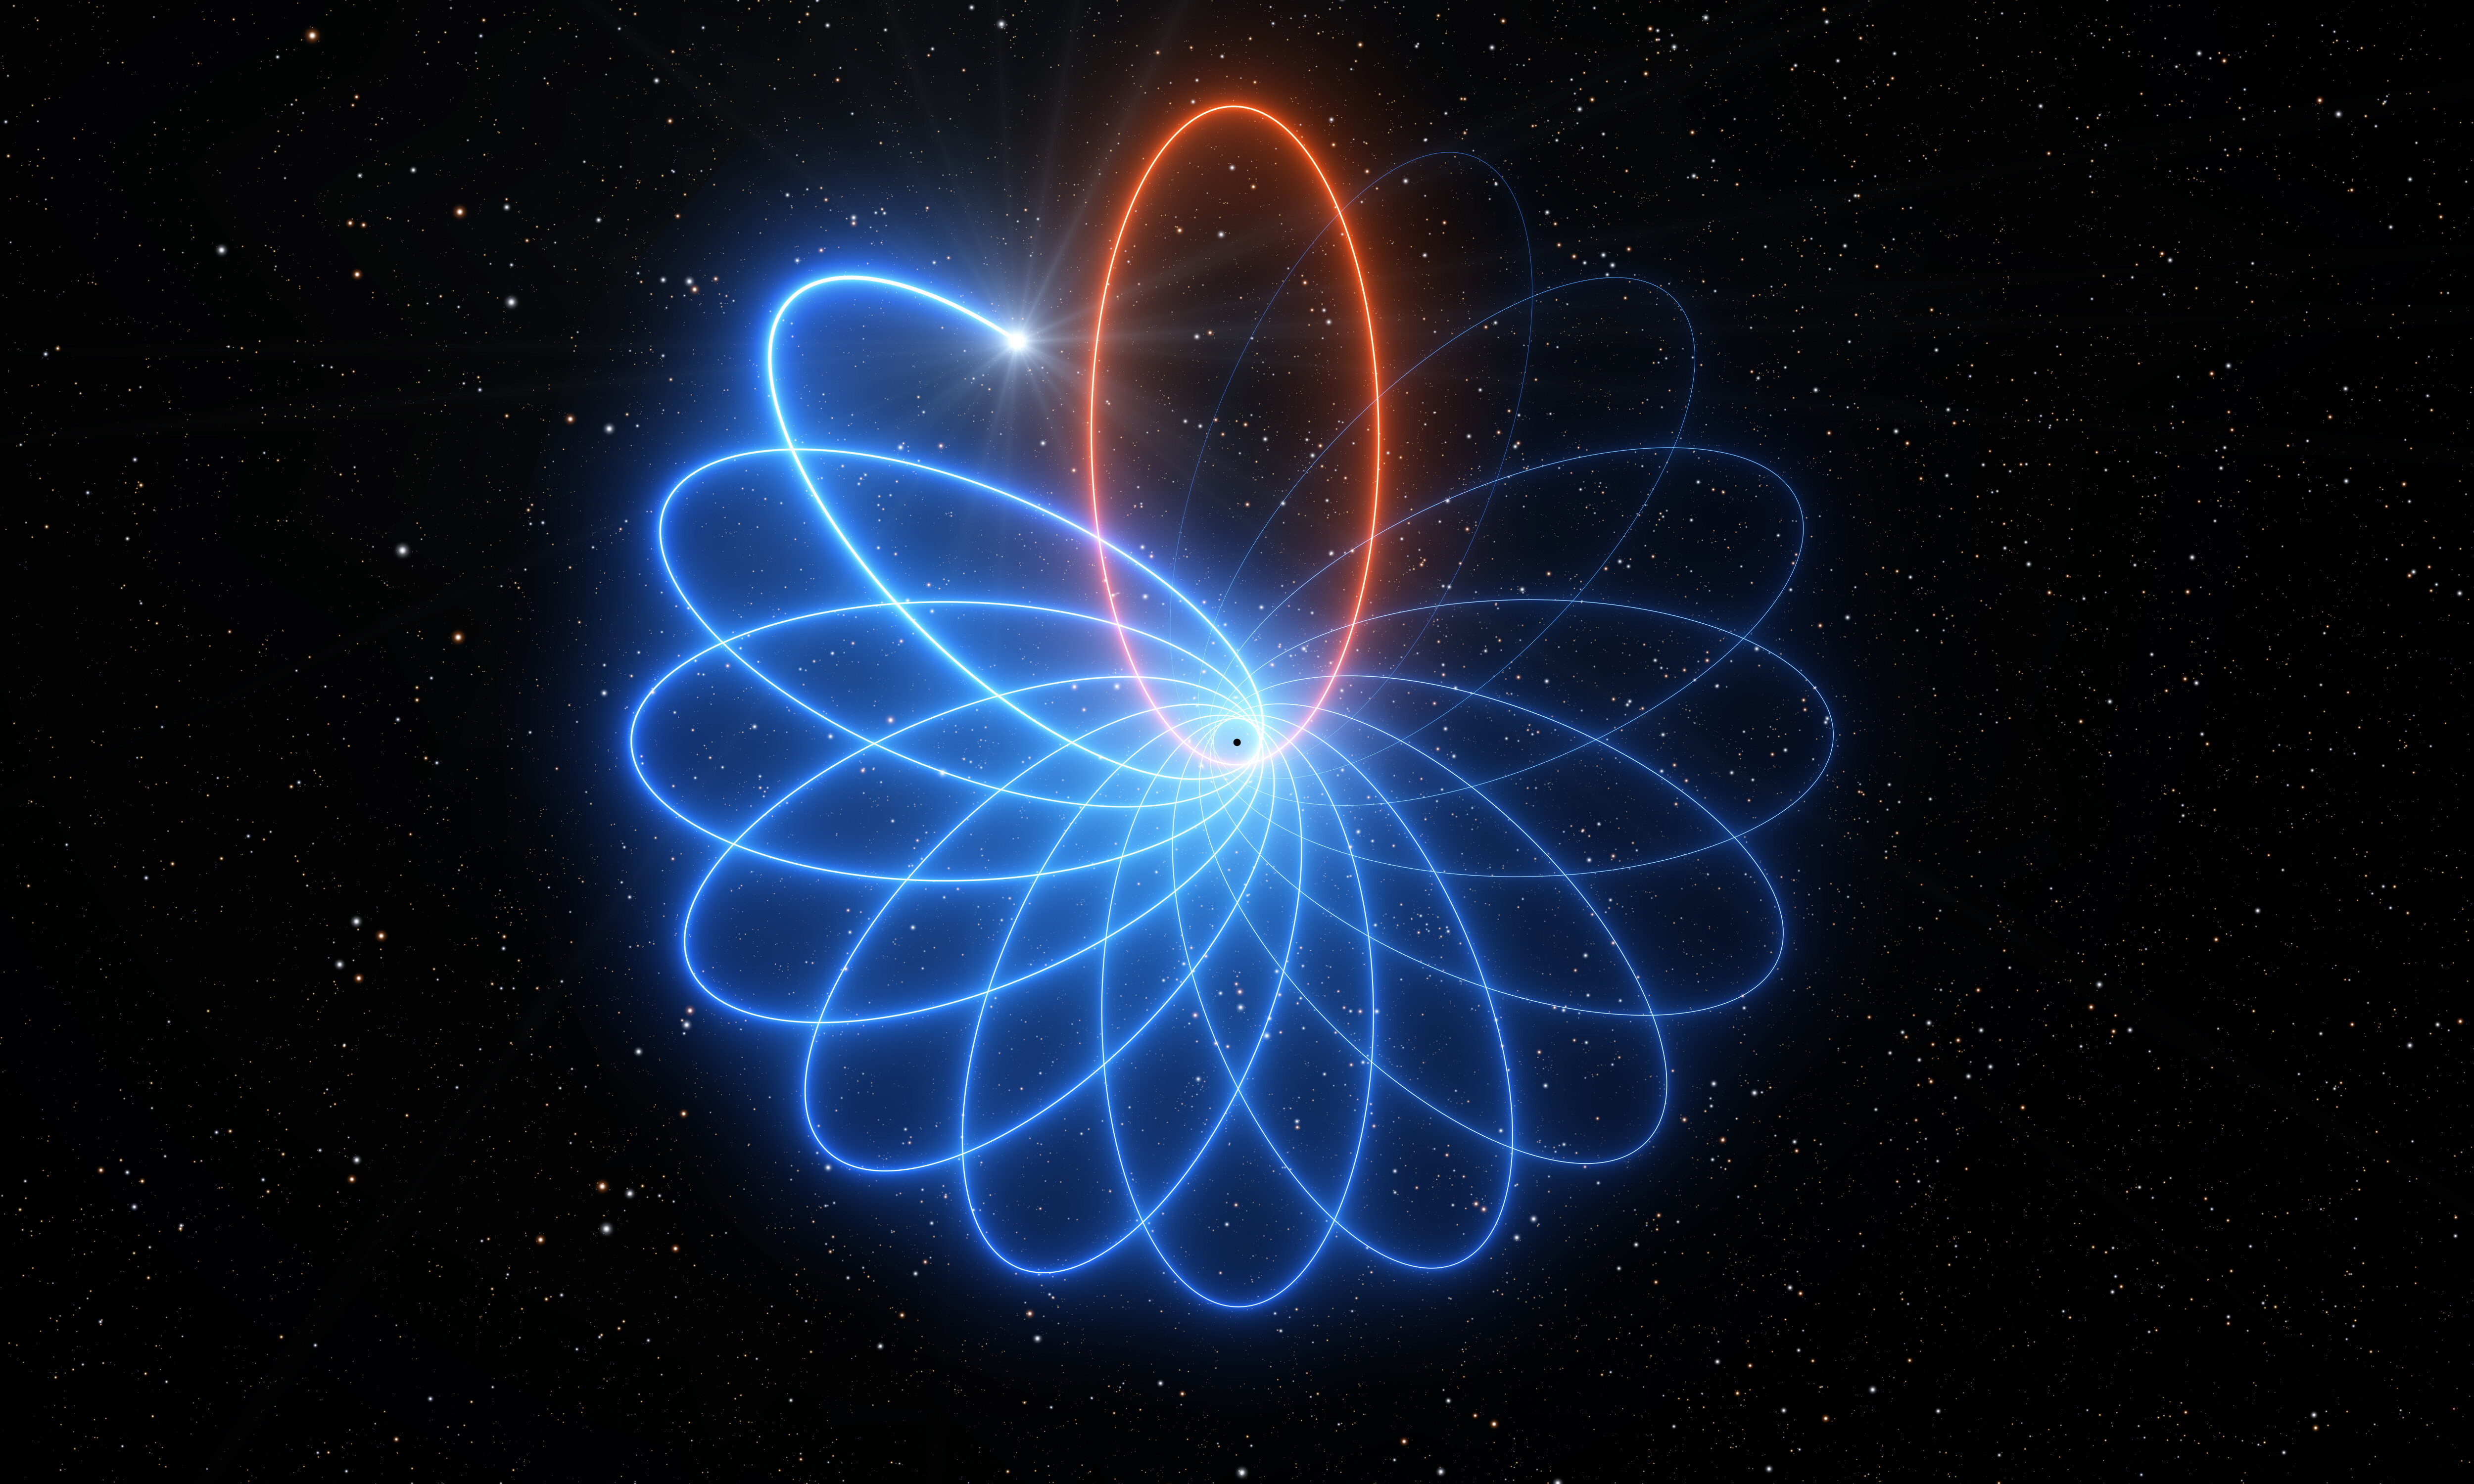 Esta representación artística ilustra la precesión de la órbita de la estrella, exagerando su efecto para una visualización más fácil.  Crédito: ESO/L. Calçada